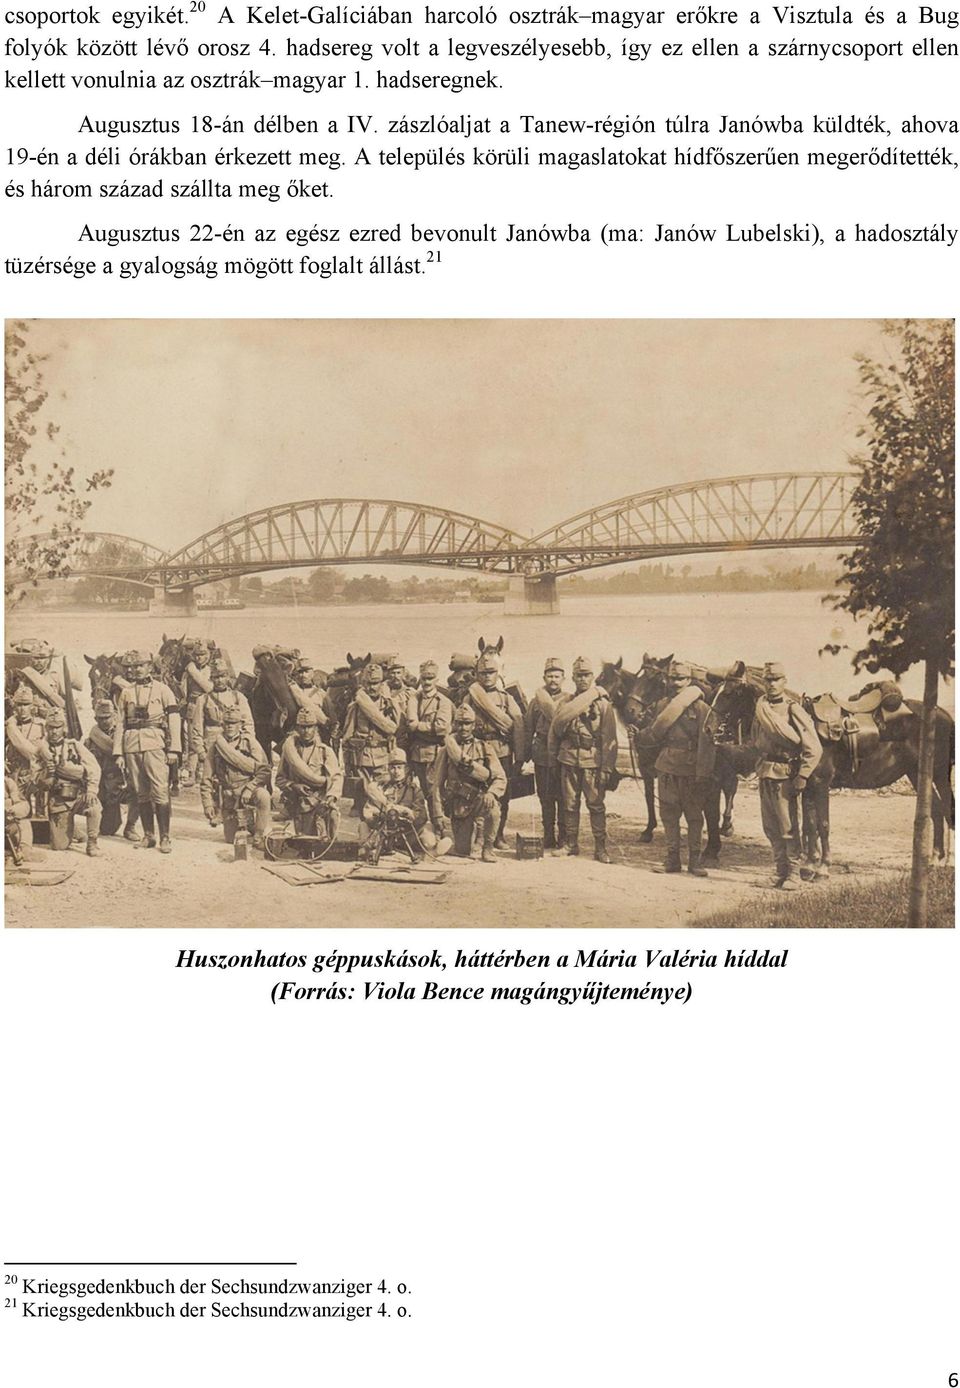 zászlóaljat a Tanew-régión túlra Janówba küldték, ahova 19-én a déli órákban érkezett meg. A település körüli magaslatokat hídfőszerűen megerődítették, és három század szállta meg őket.